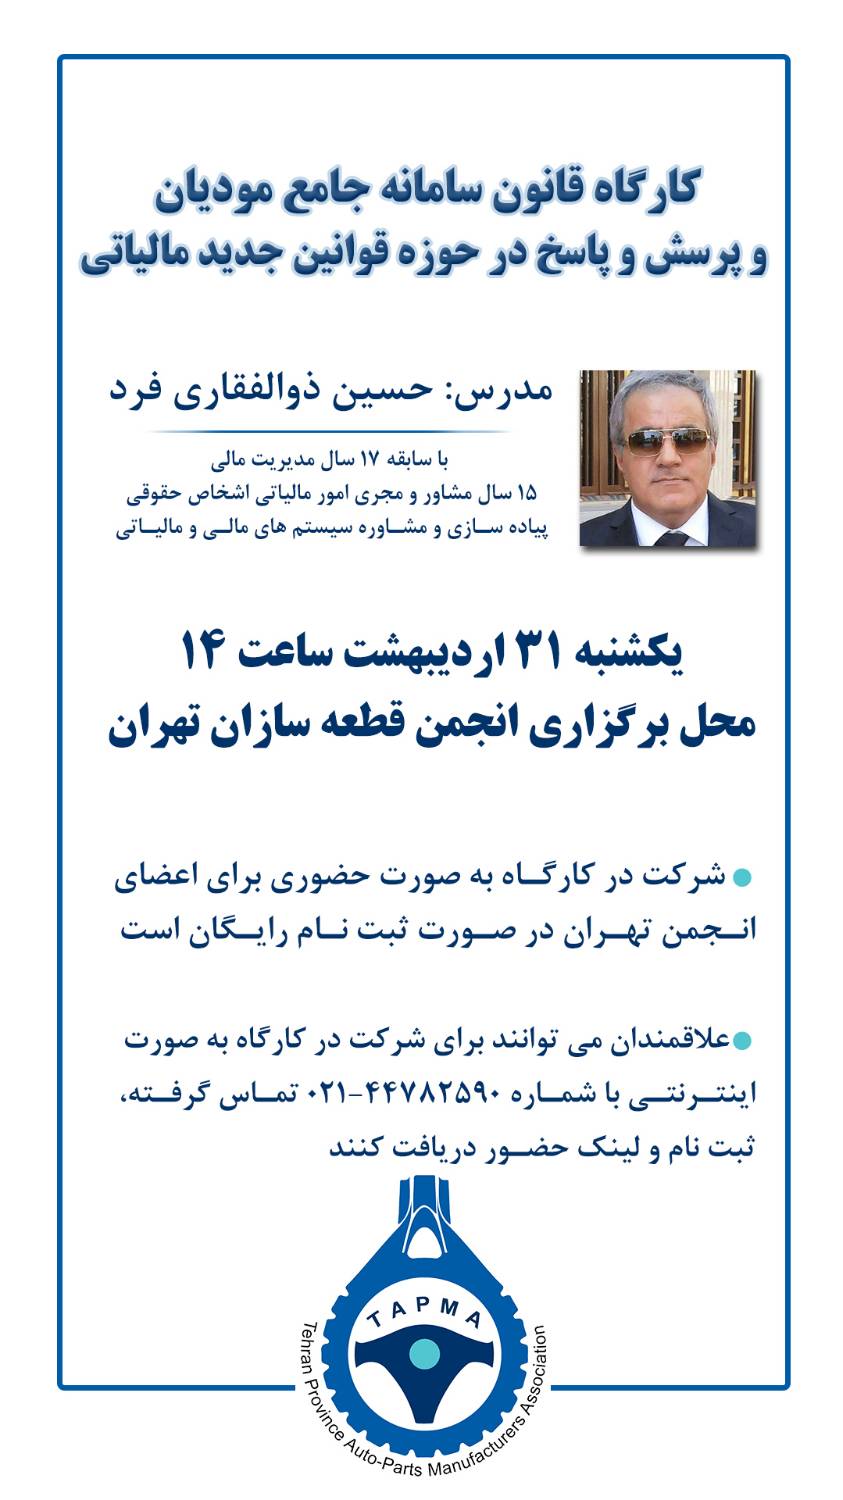 کارگاه قانون سامانه مودیان و آشنایی با قوانین جدید مالیاتی در انجمن قطعه سازان تهران